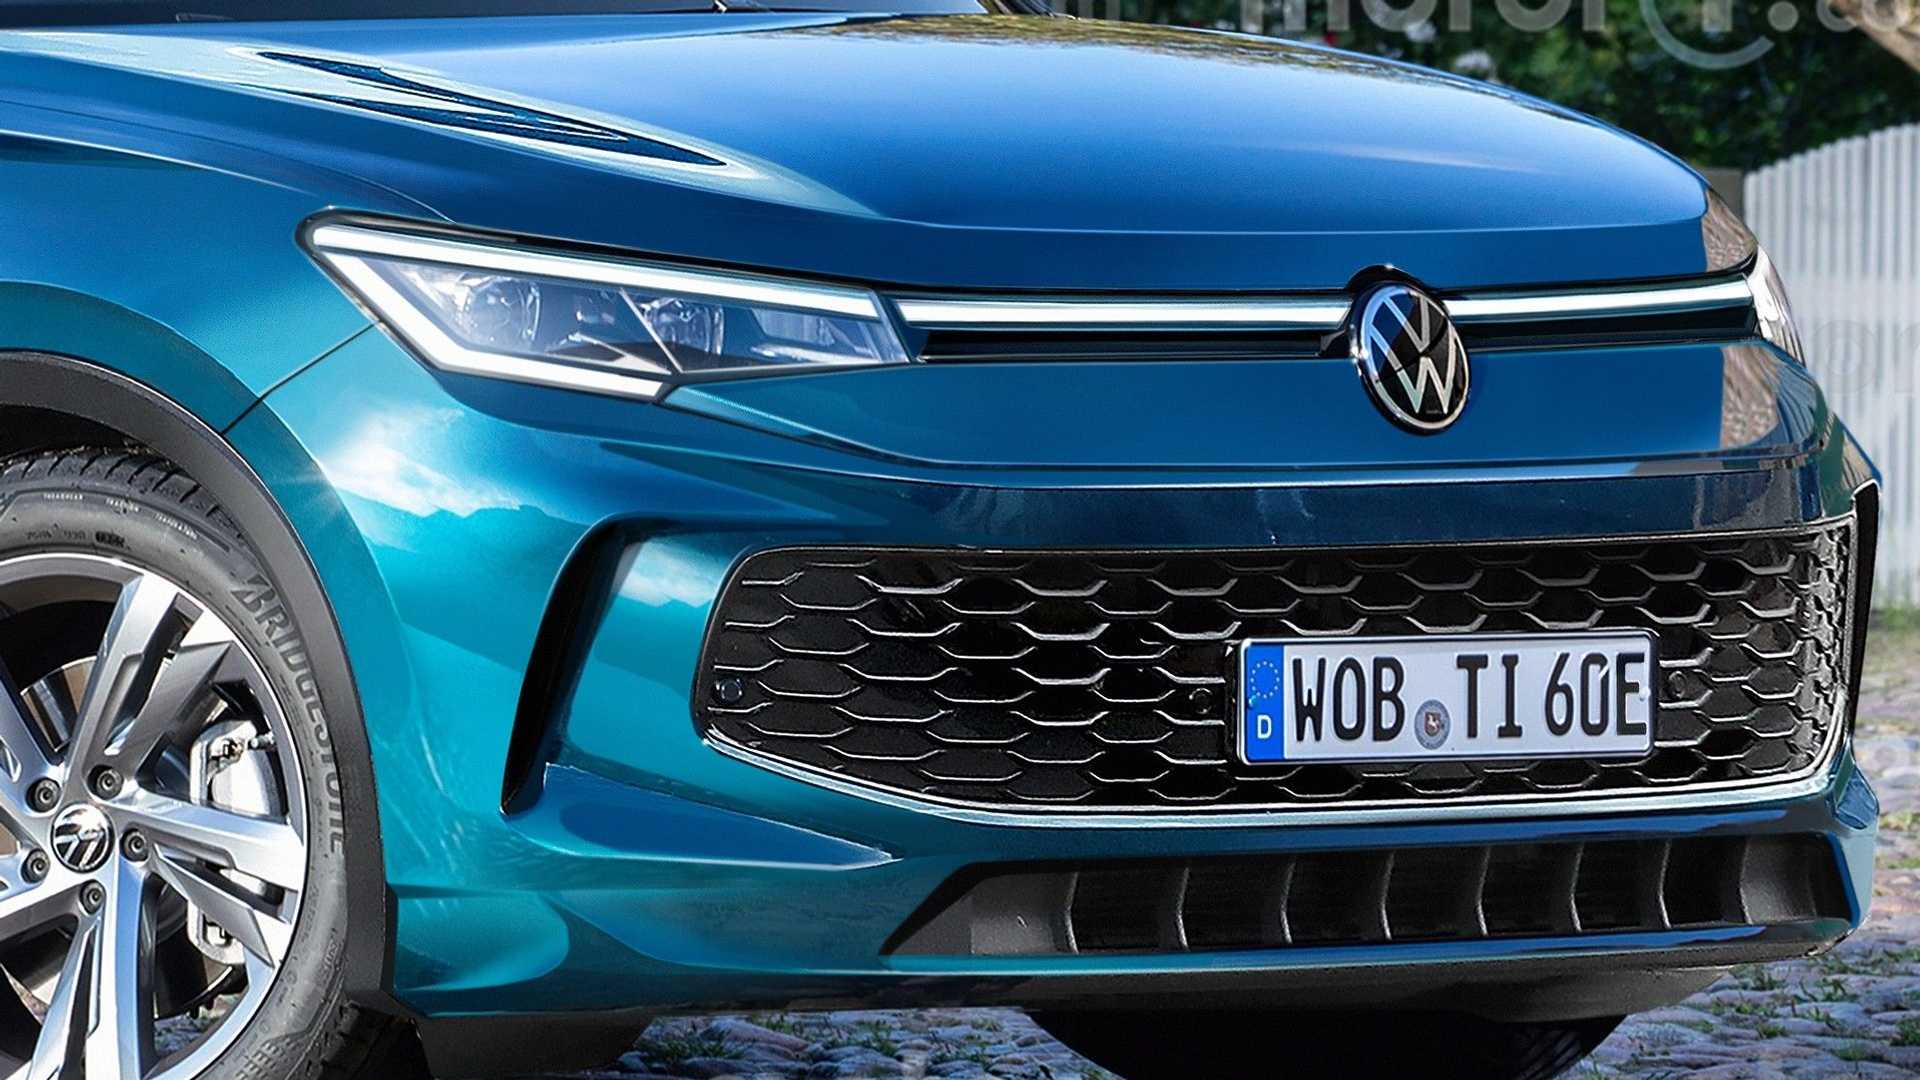 Volkswagen Tiguan получил обновленный дизайн — фото